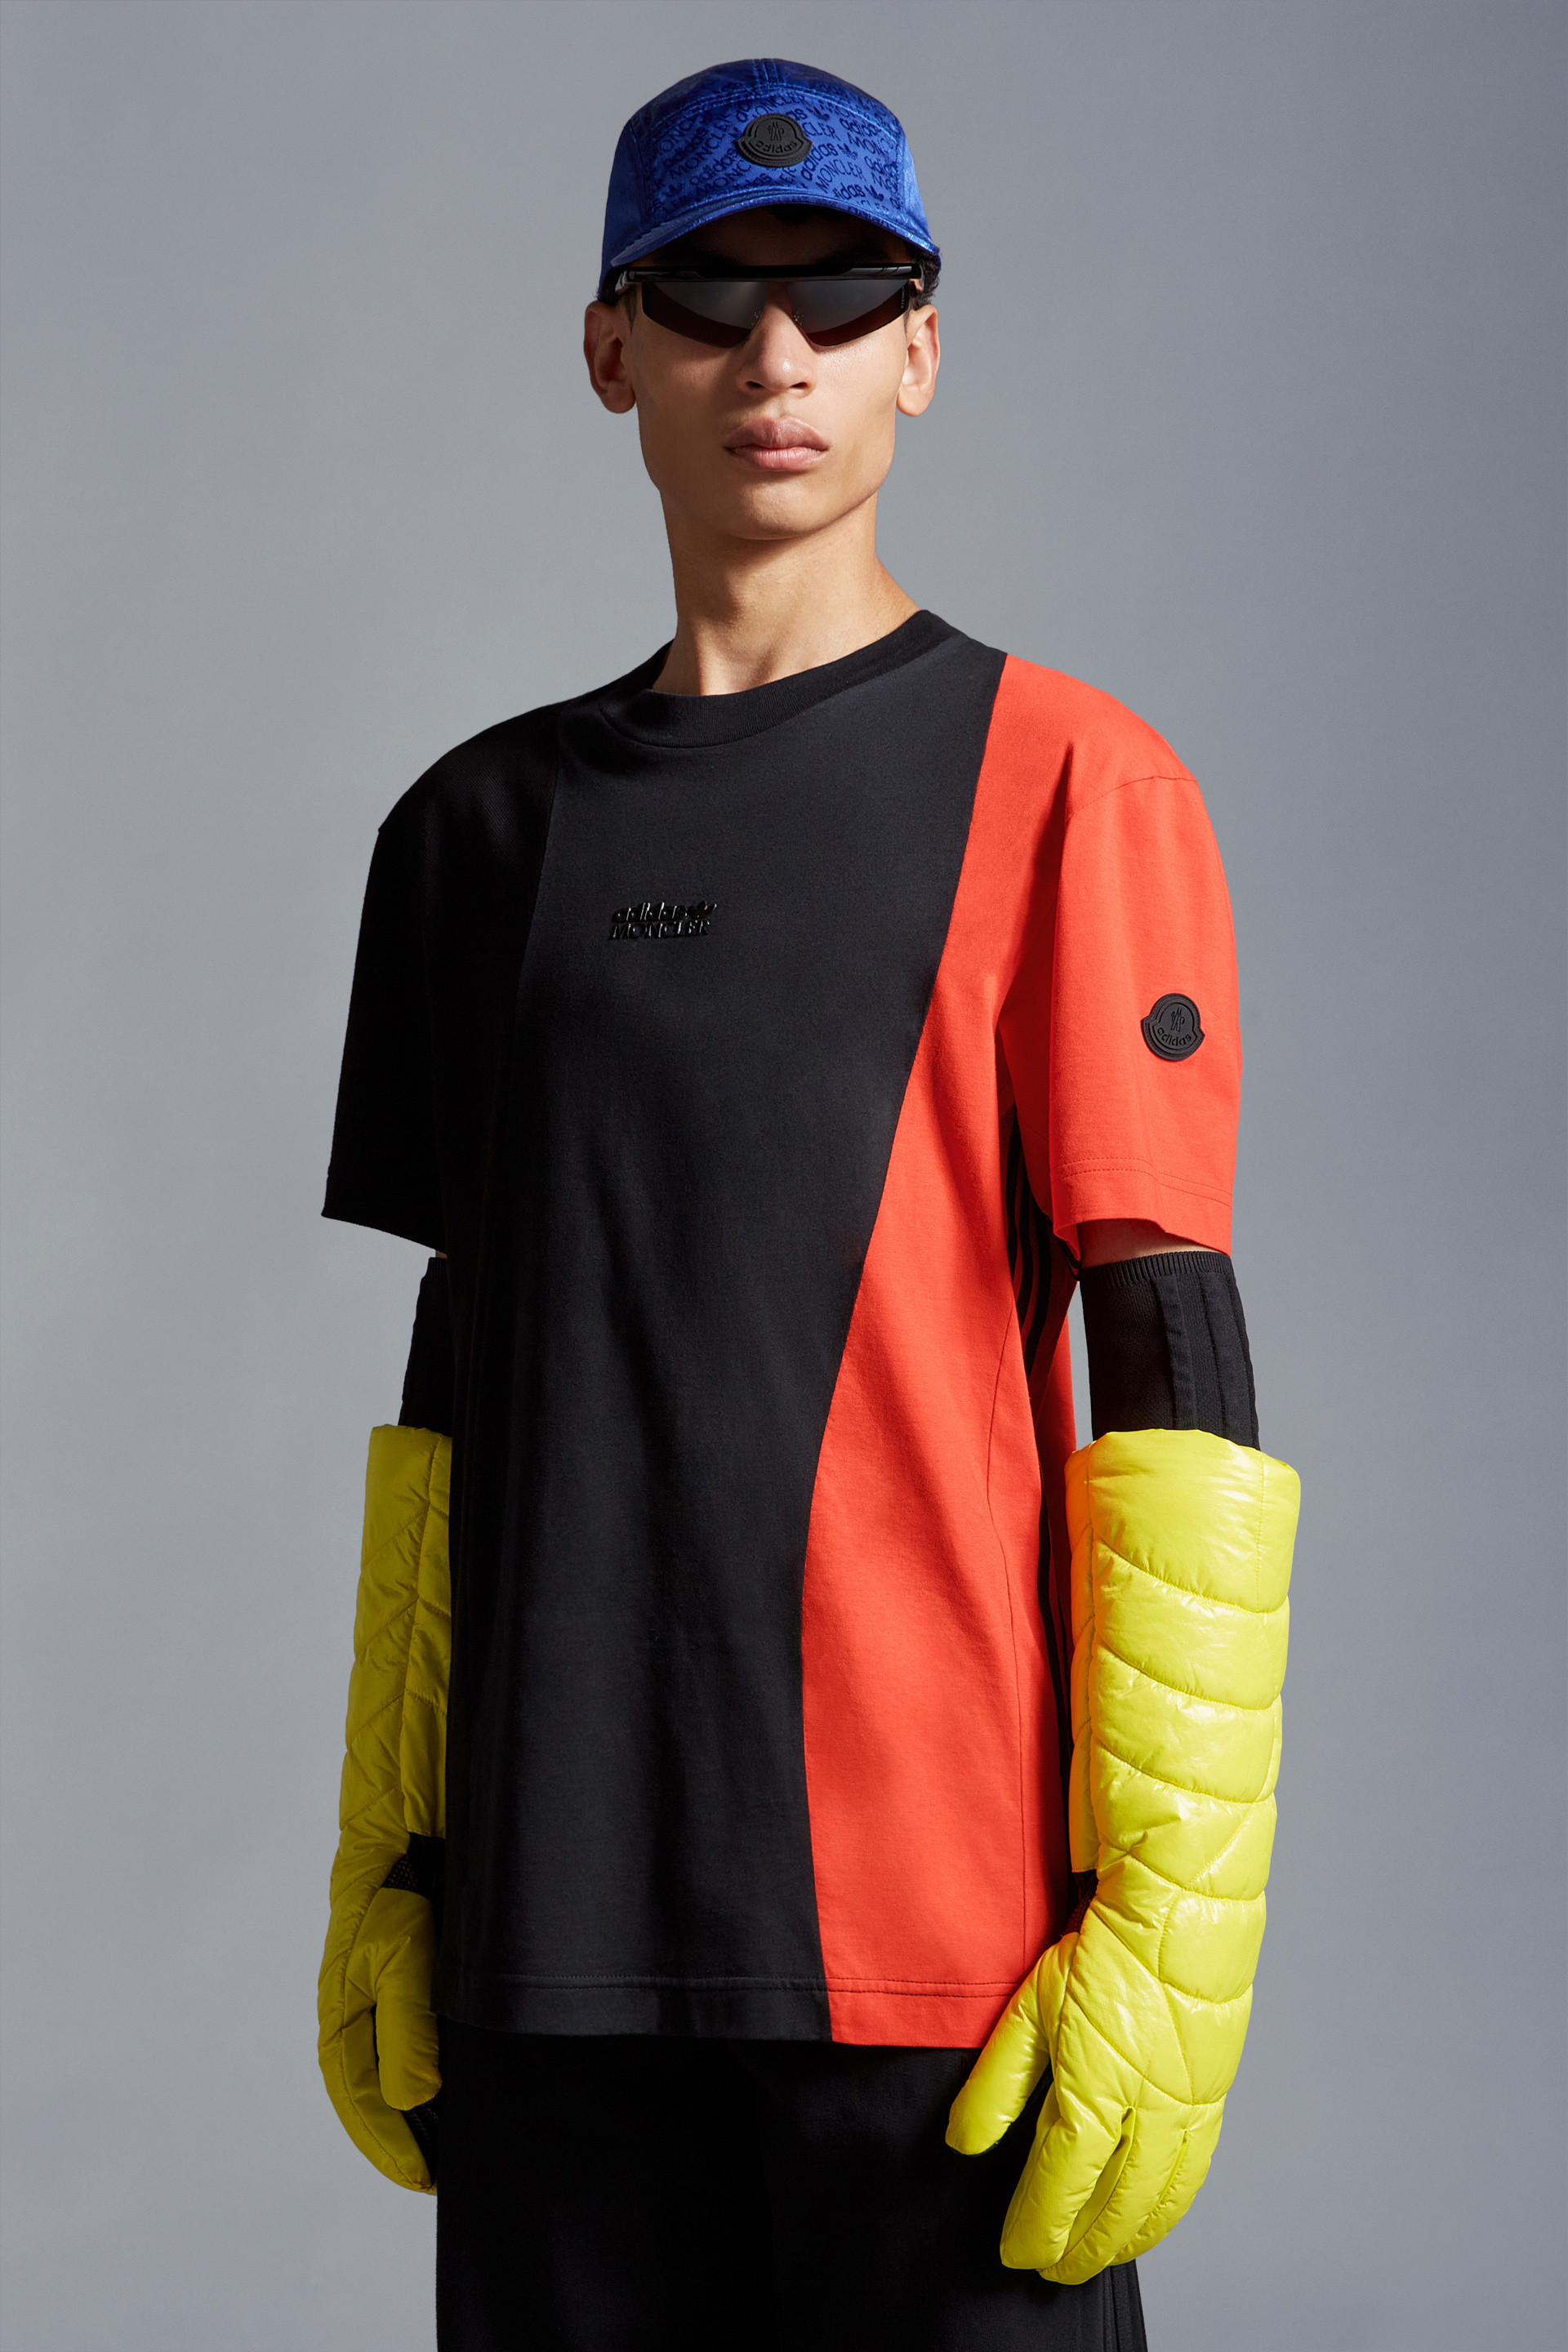 オレンジ & ブラック Tシャツ : Moncler x adidas Originals 向けの 